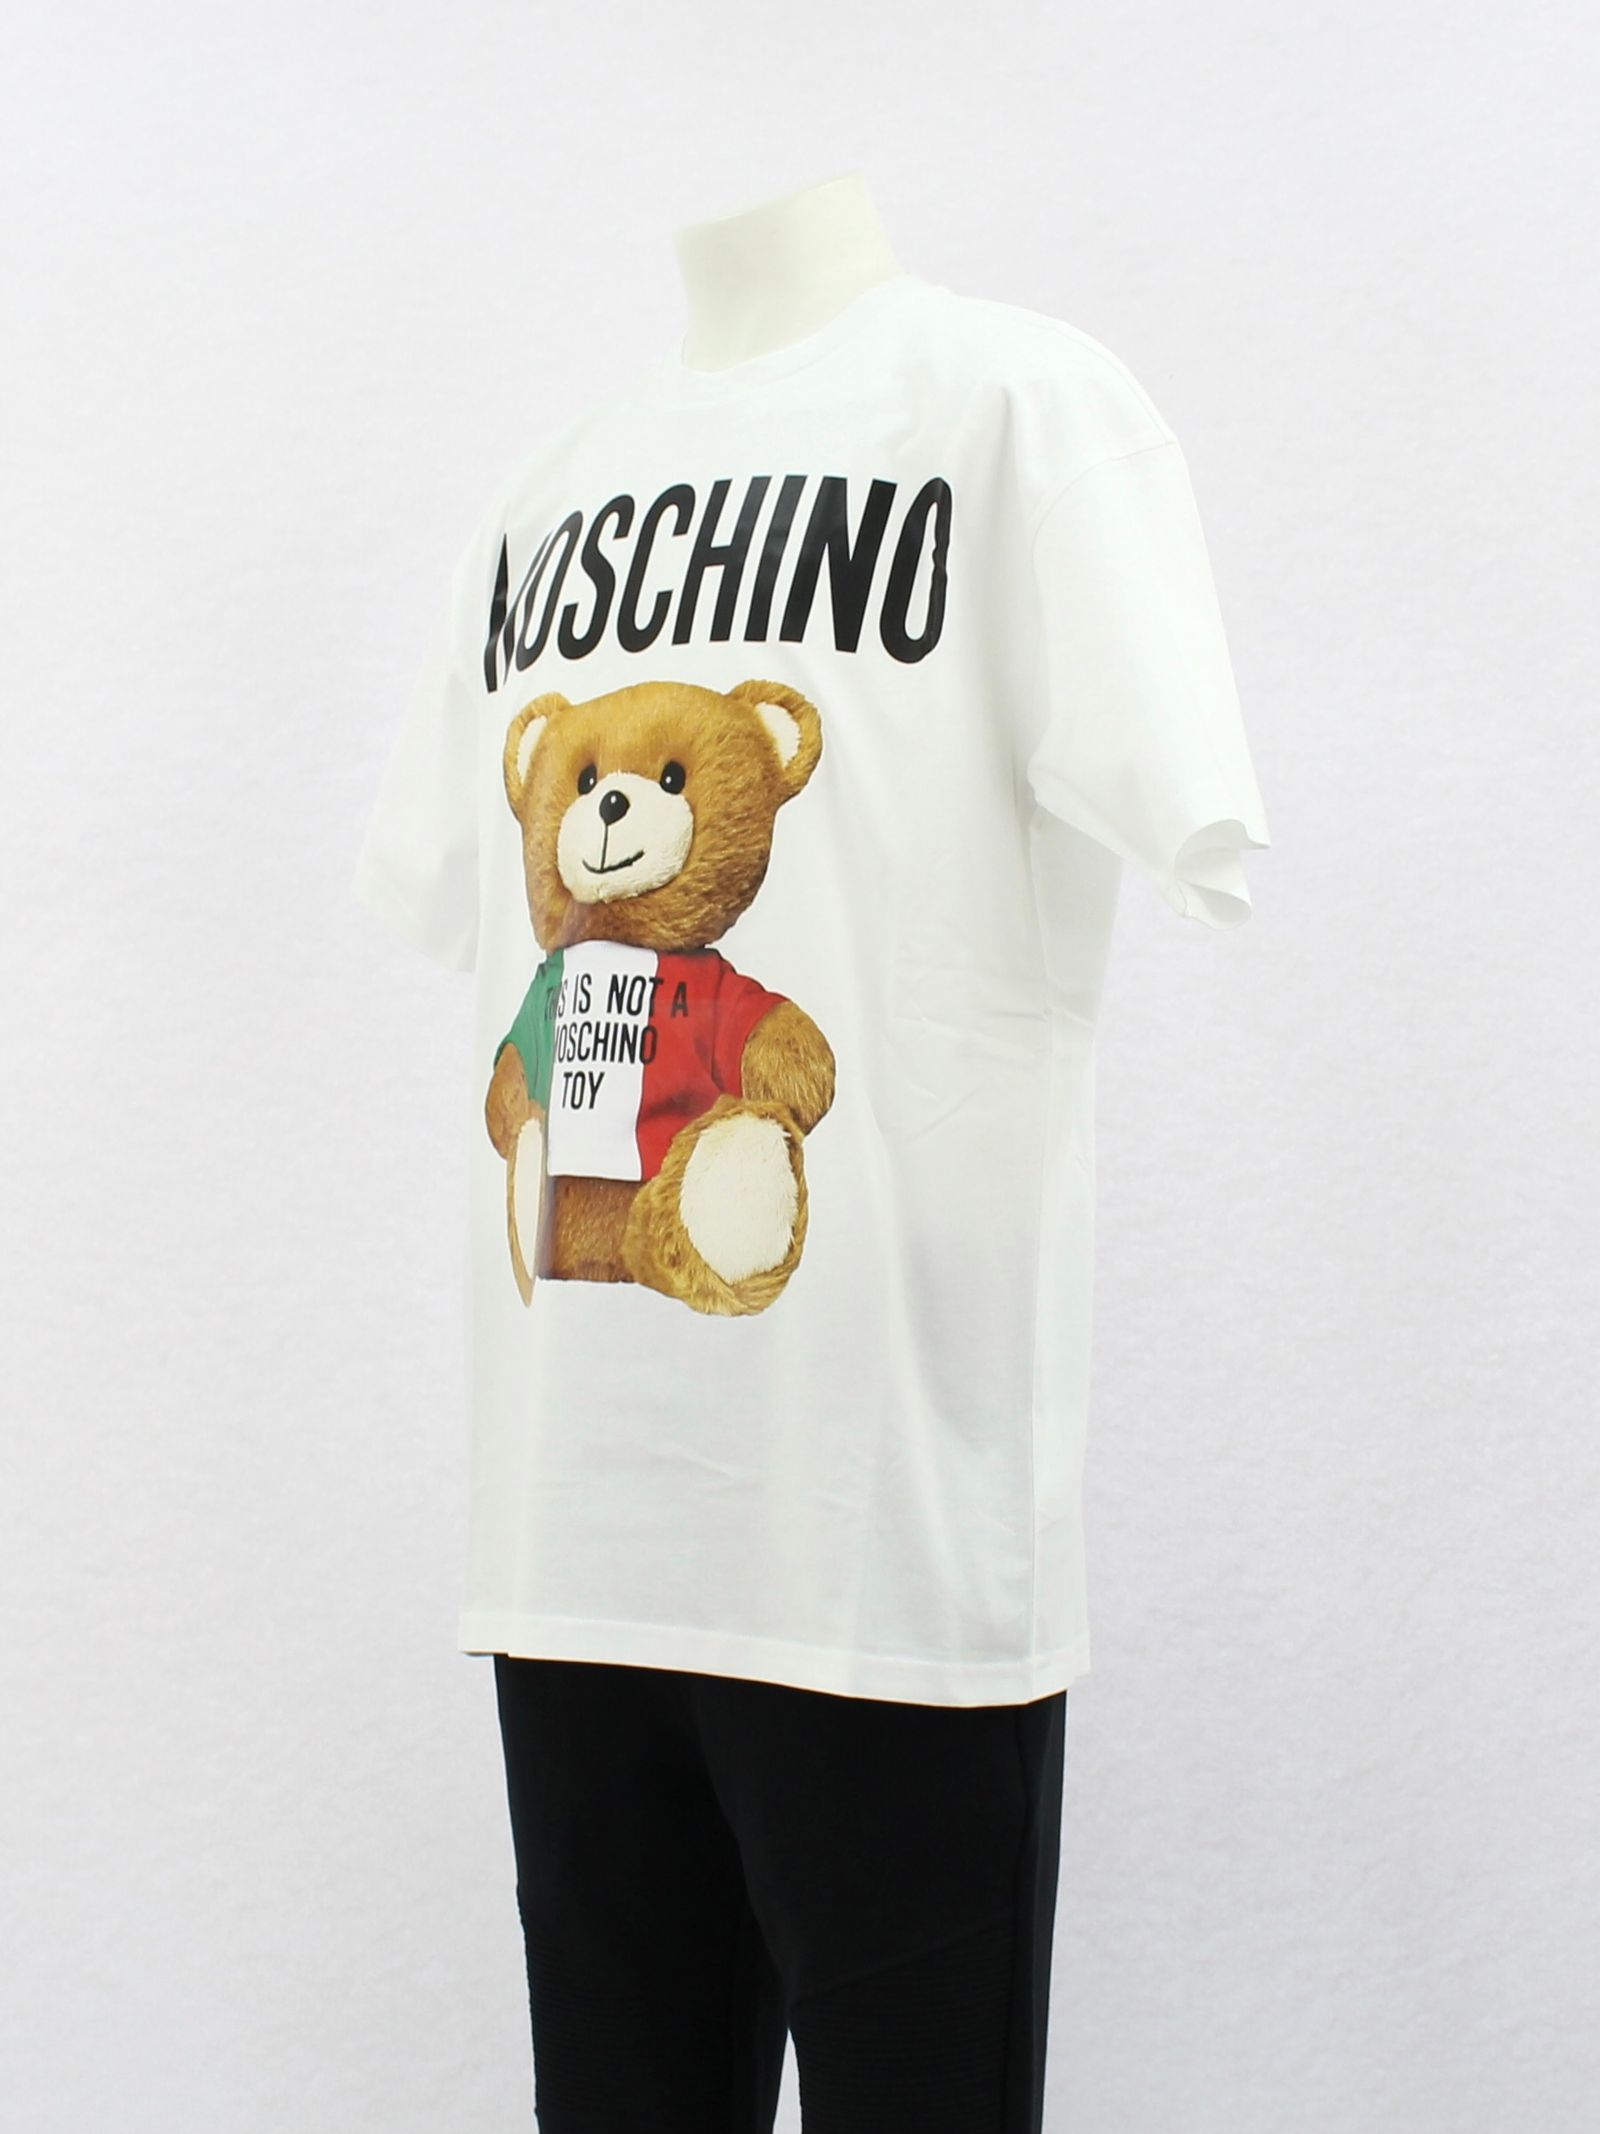 MOSCHINO - オーバーサイズ イタリアン ベアプリントTシャツ / OVER 